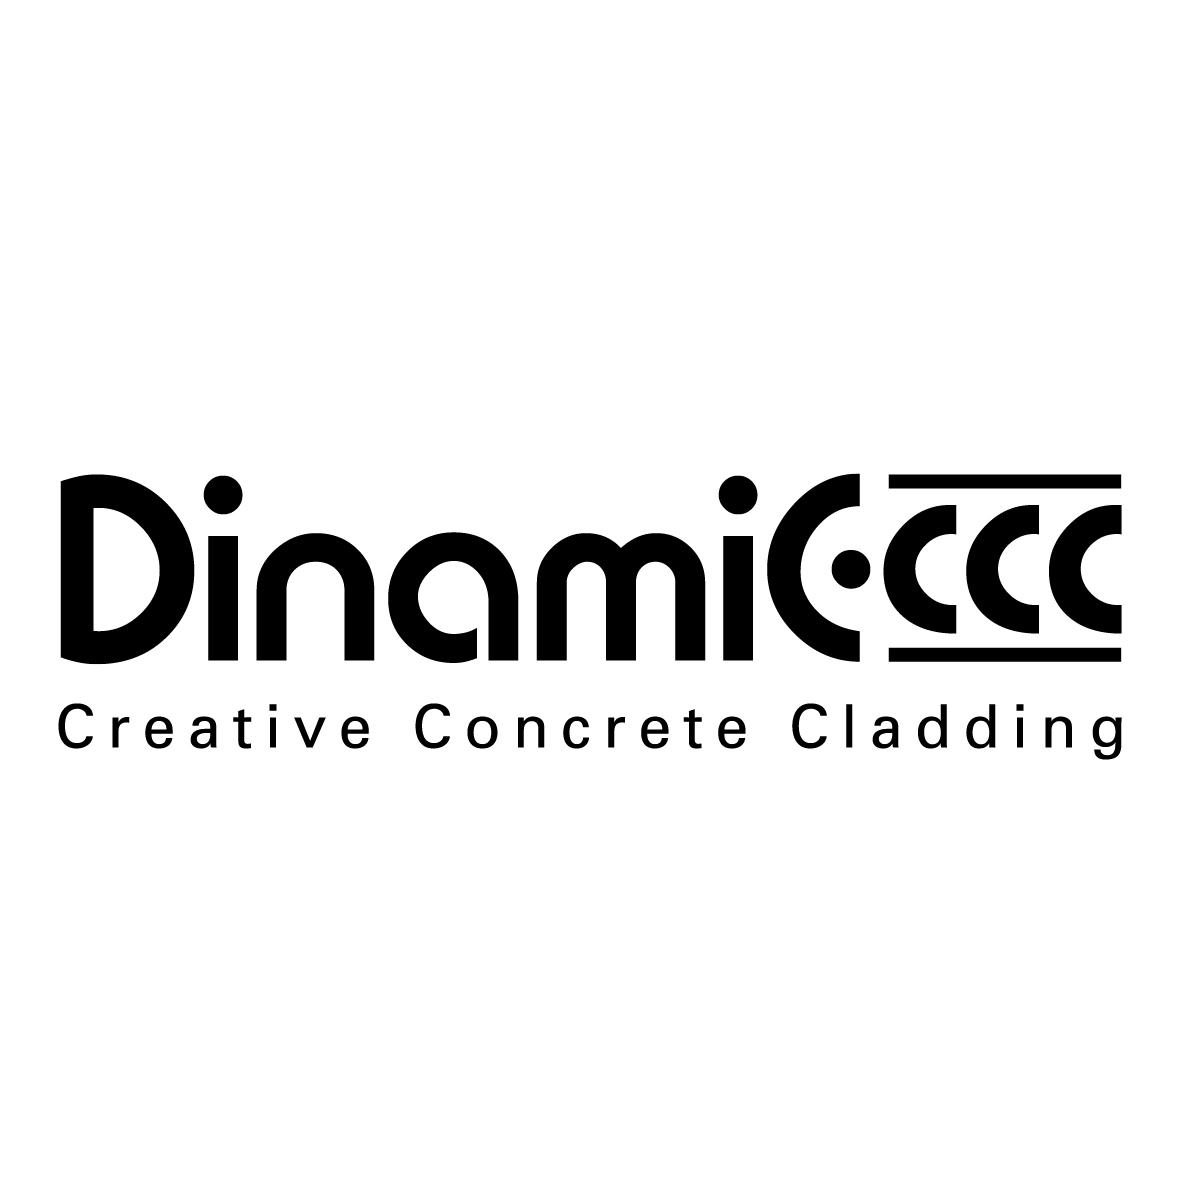 Dinamic Creactive Contrete Cladding